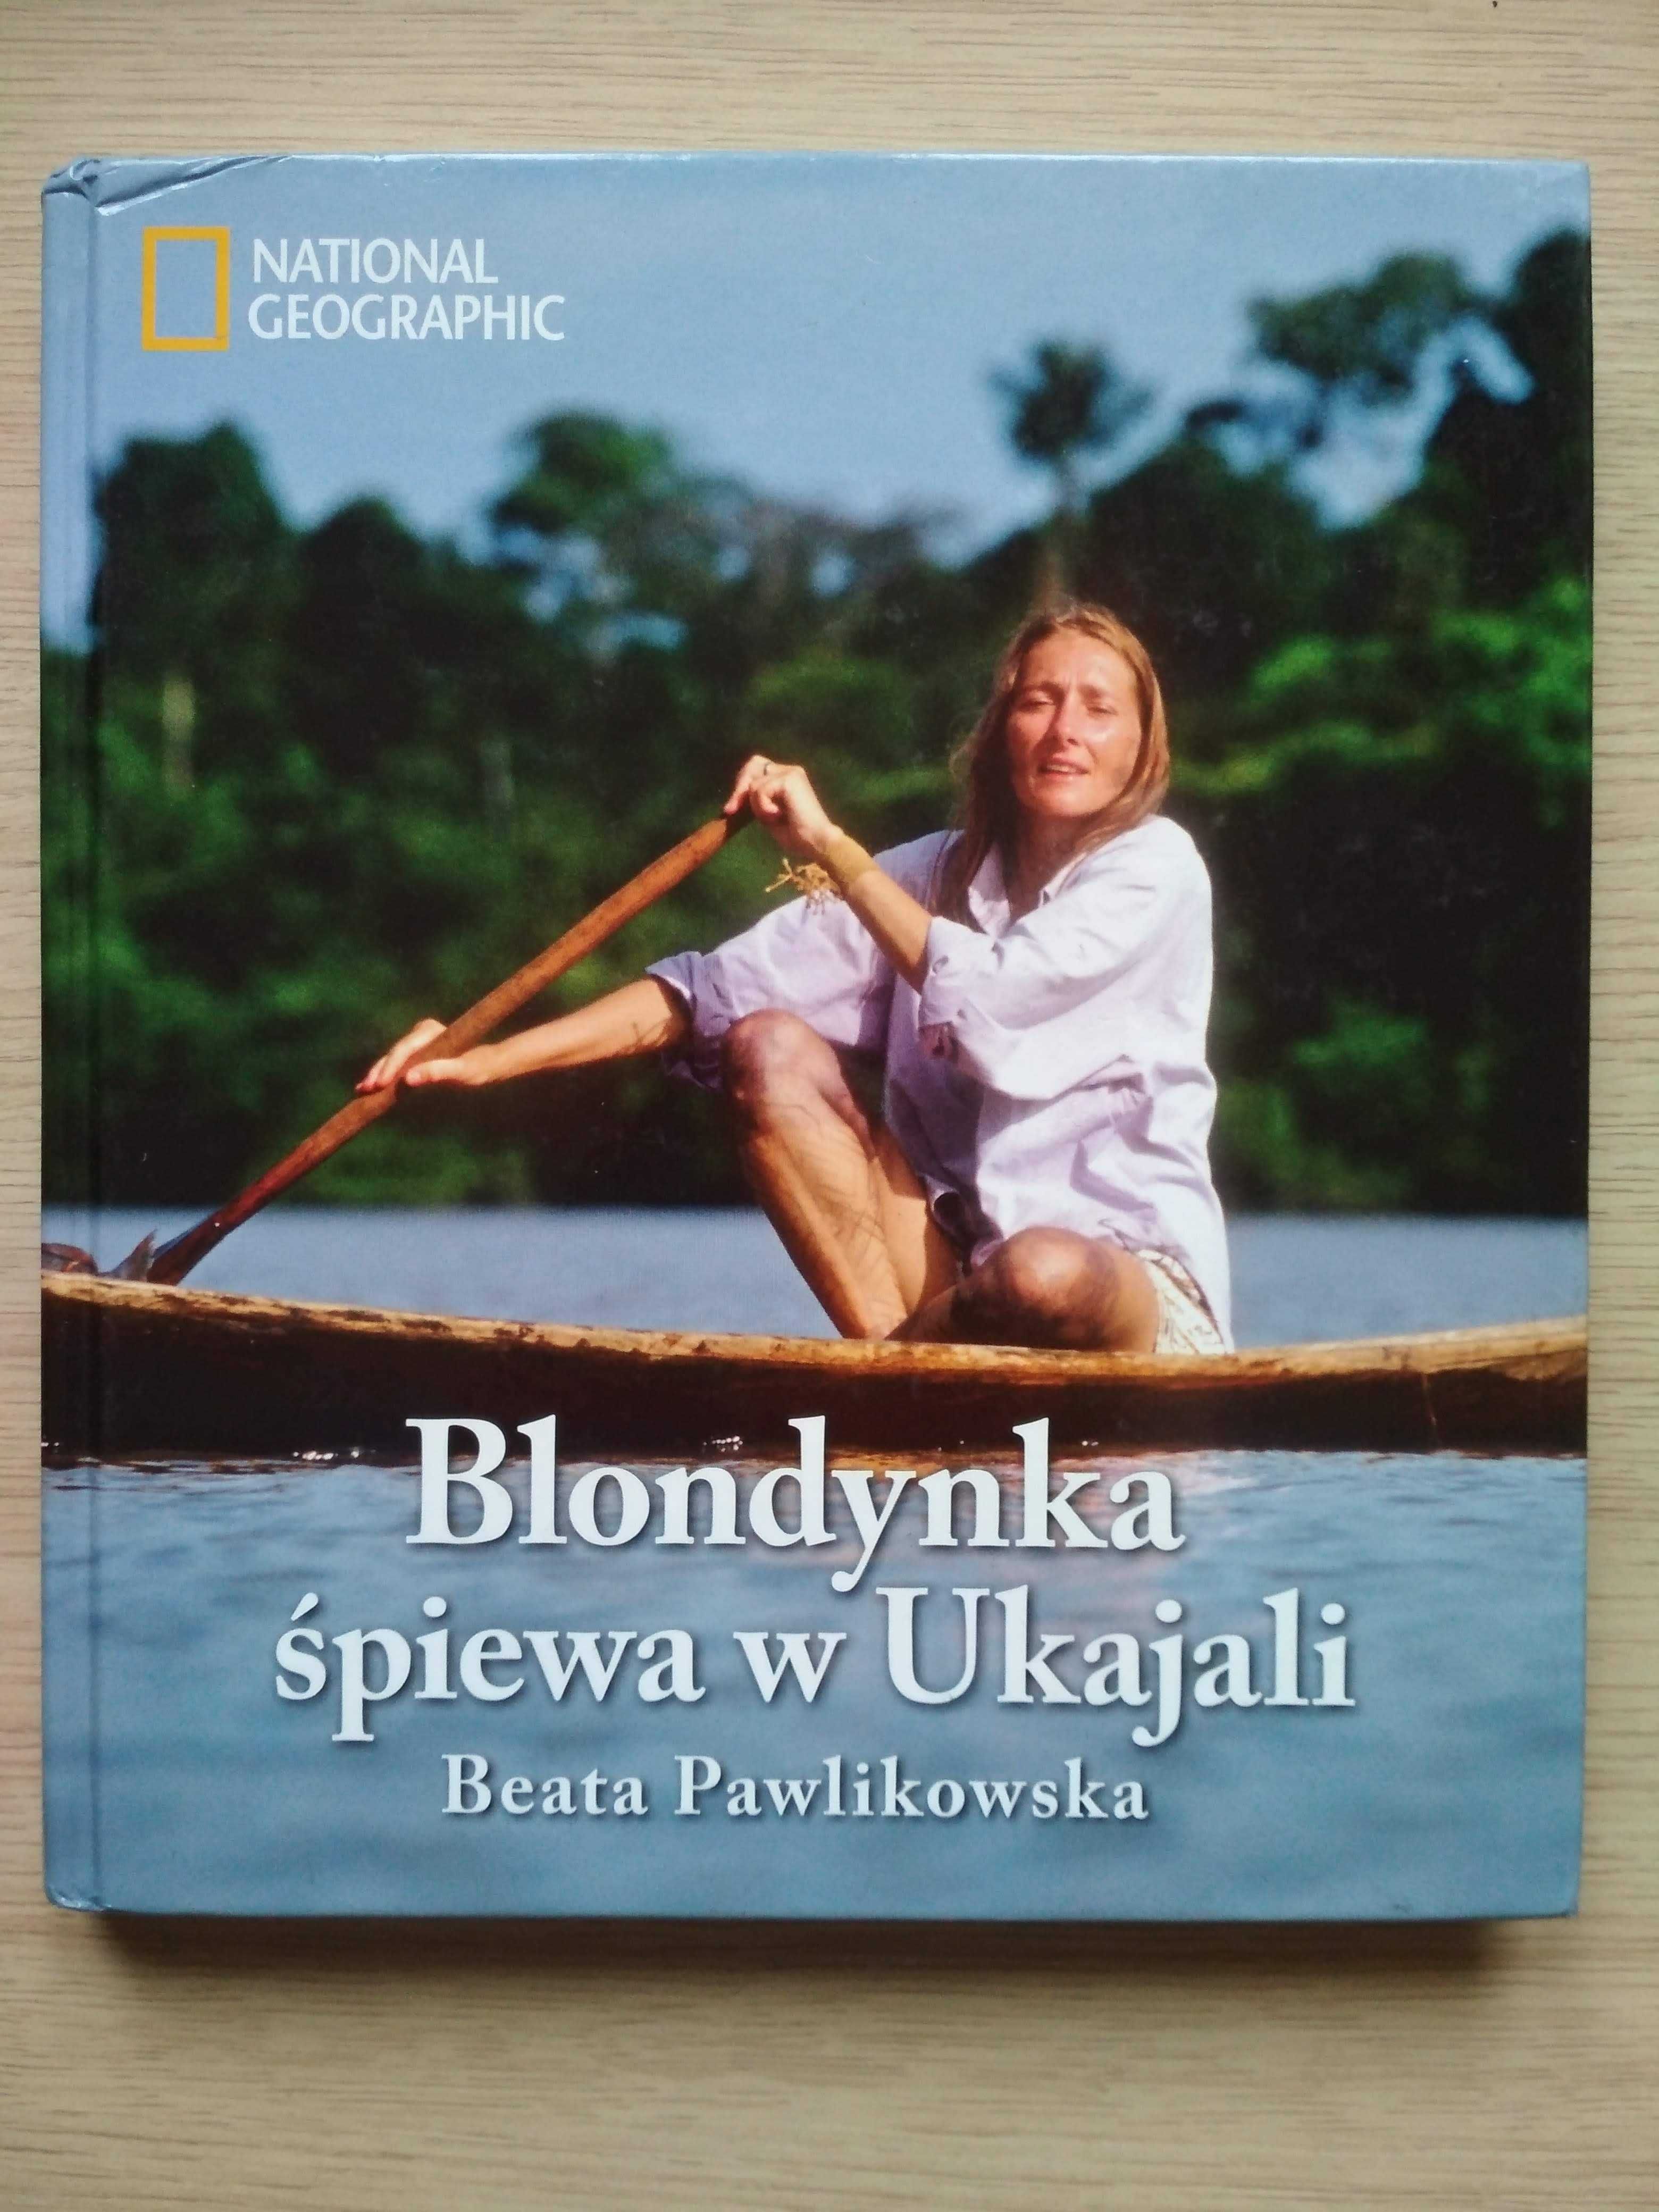 książka Beata Pawlikowska "Blondynka śpiewa w Ukajali"